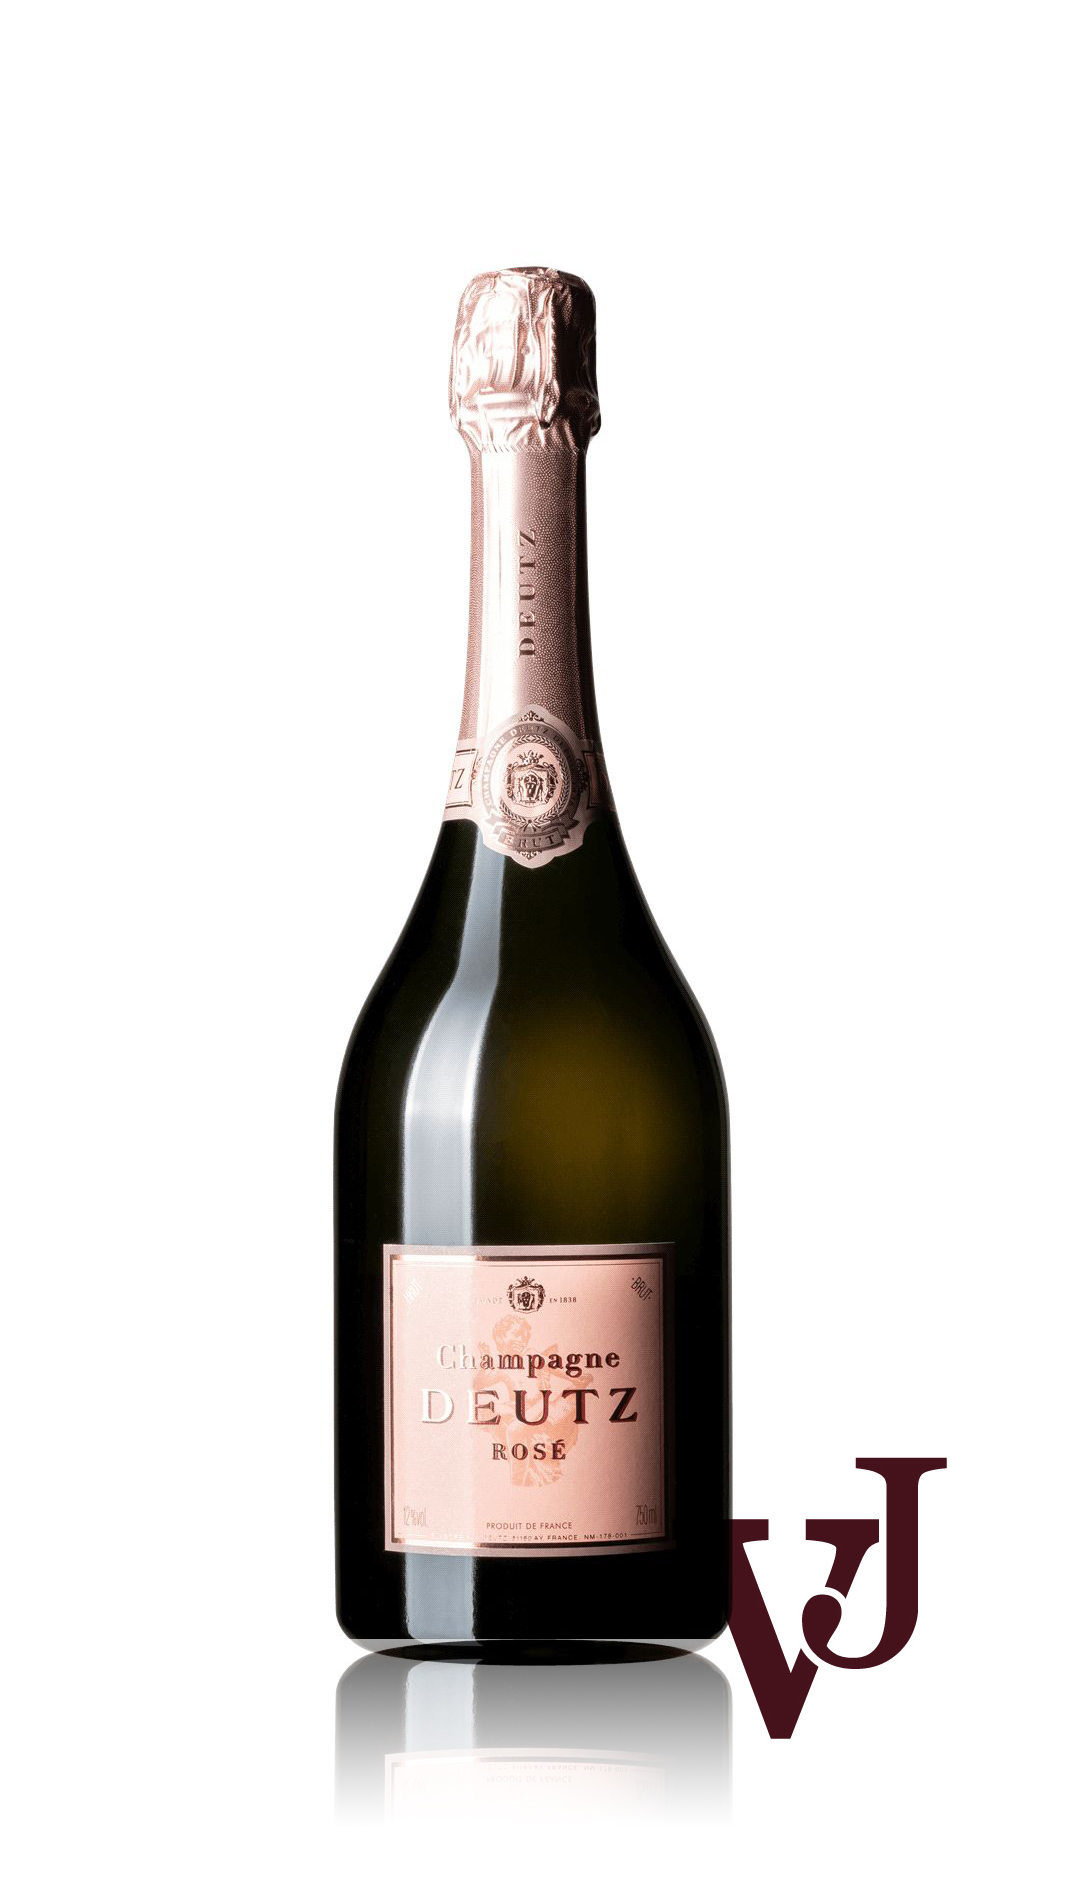 Mousserande Vin - Deutz Rosé Brut artikel nummer 7723901 från producenten Deutz från området Frankrike